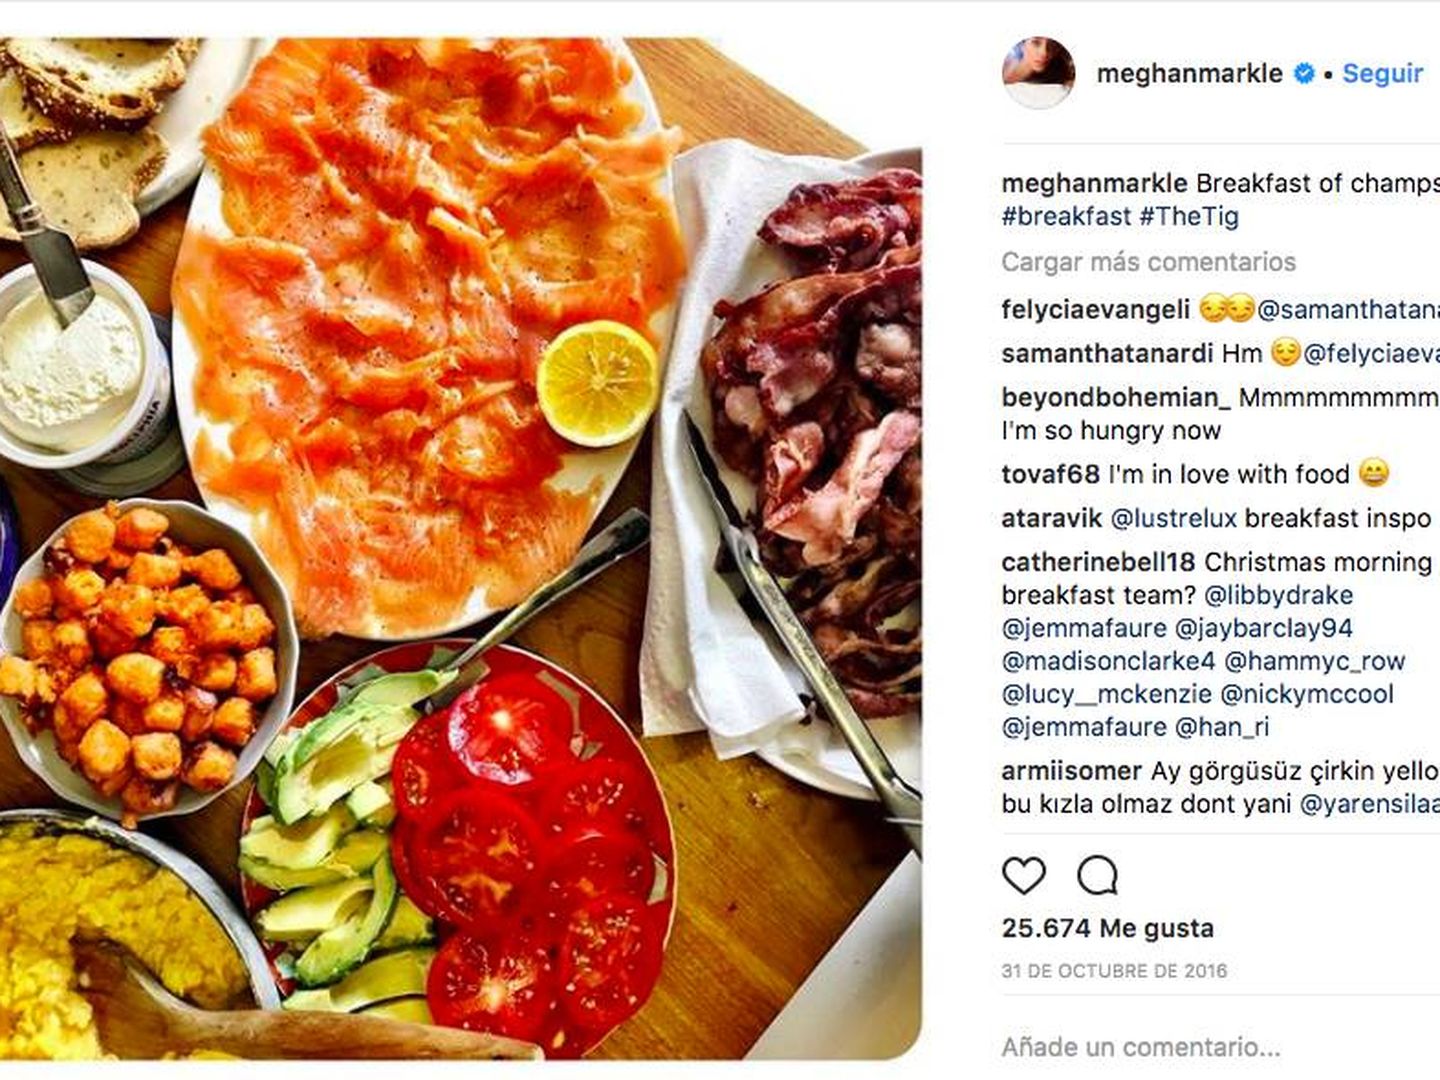 Markle da buena cuenta de sus desayunos en su perfil de Instagram. 